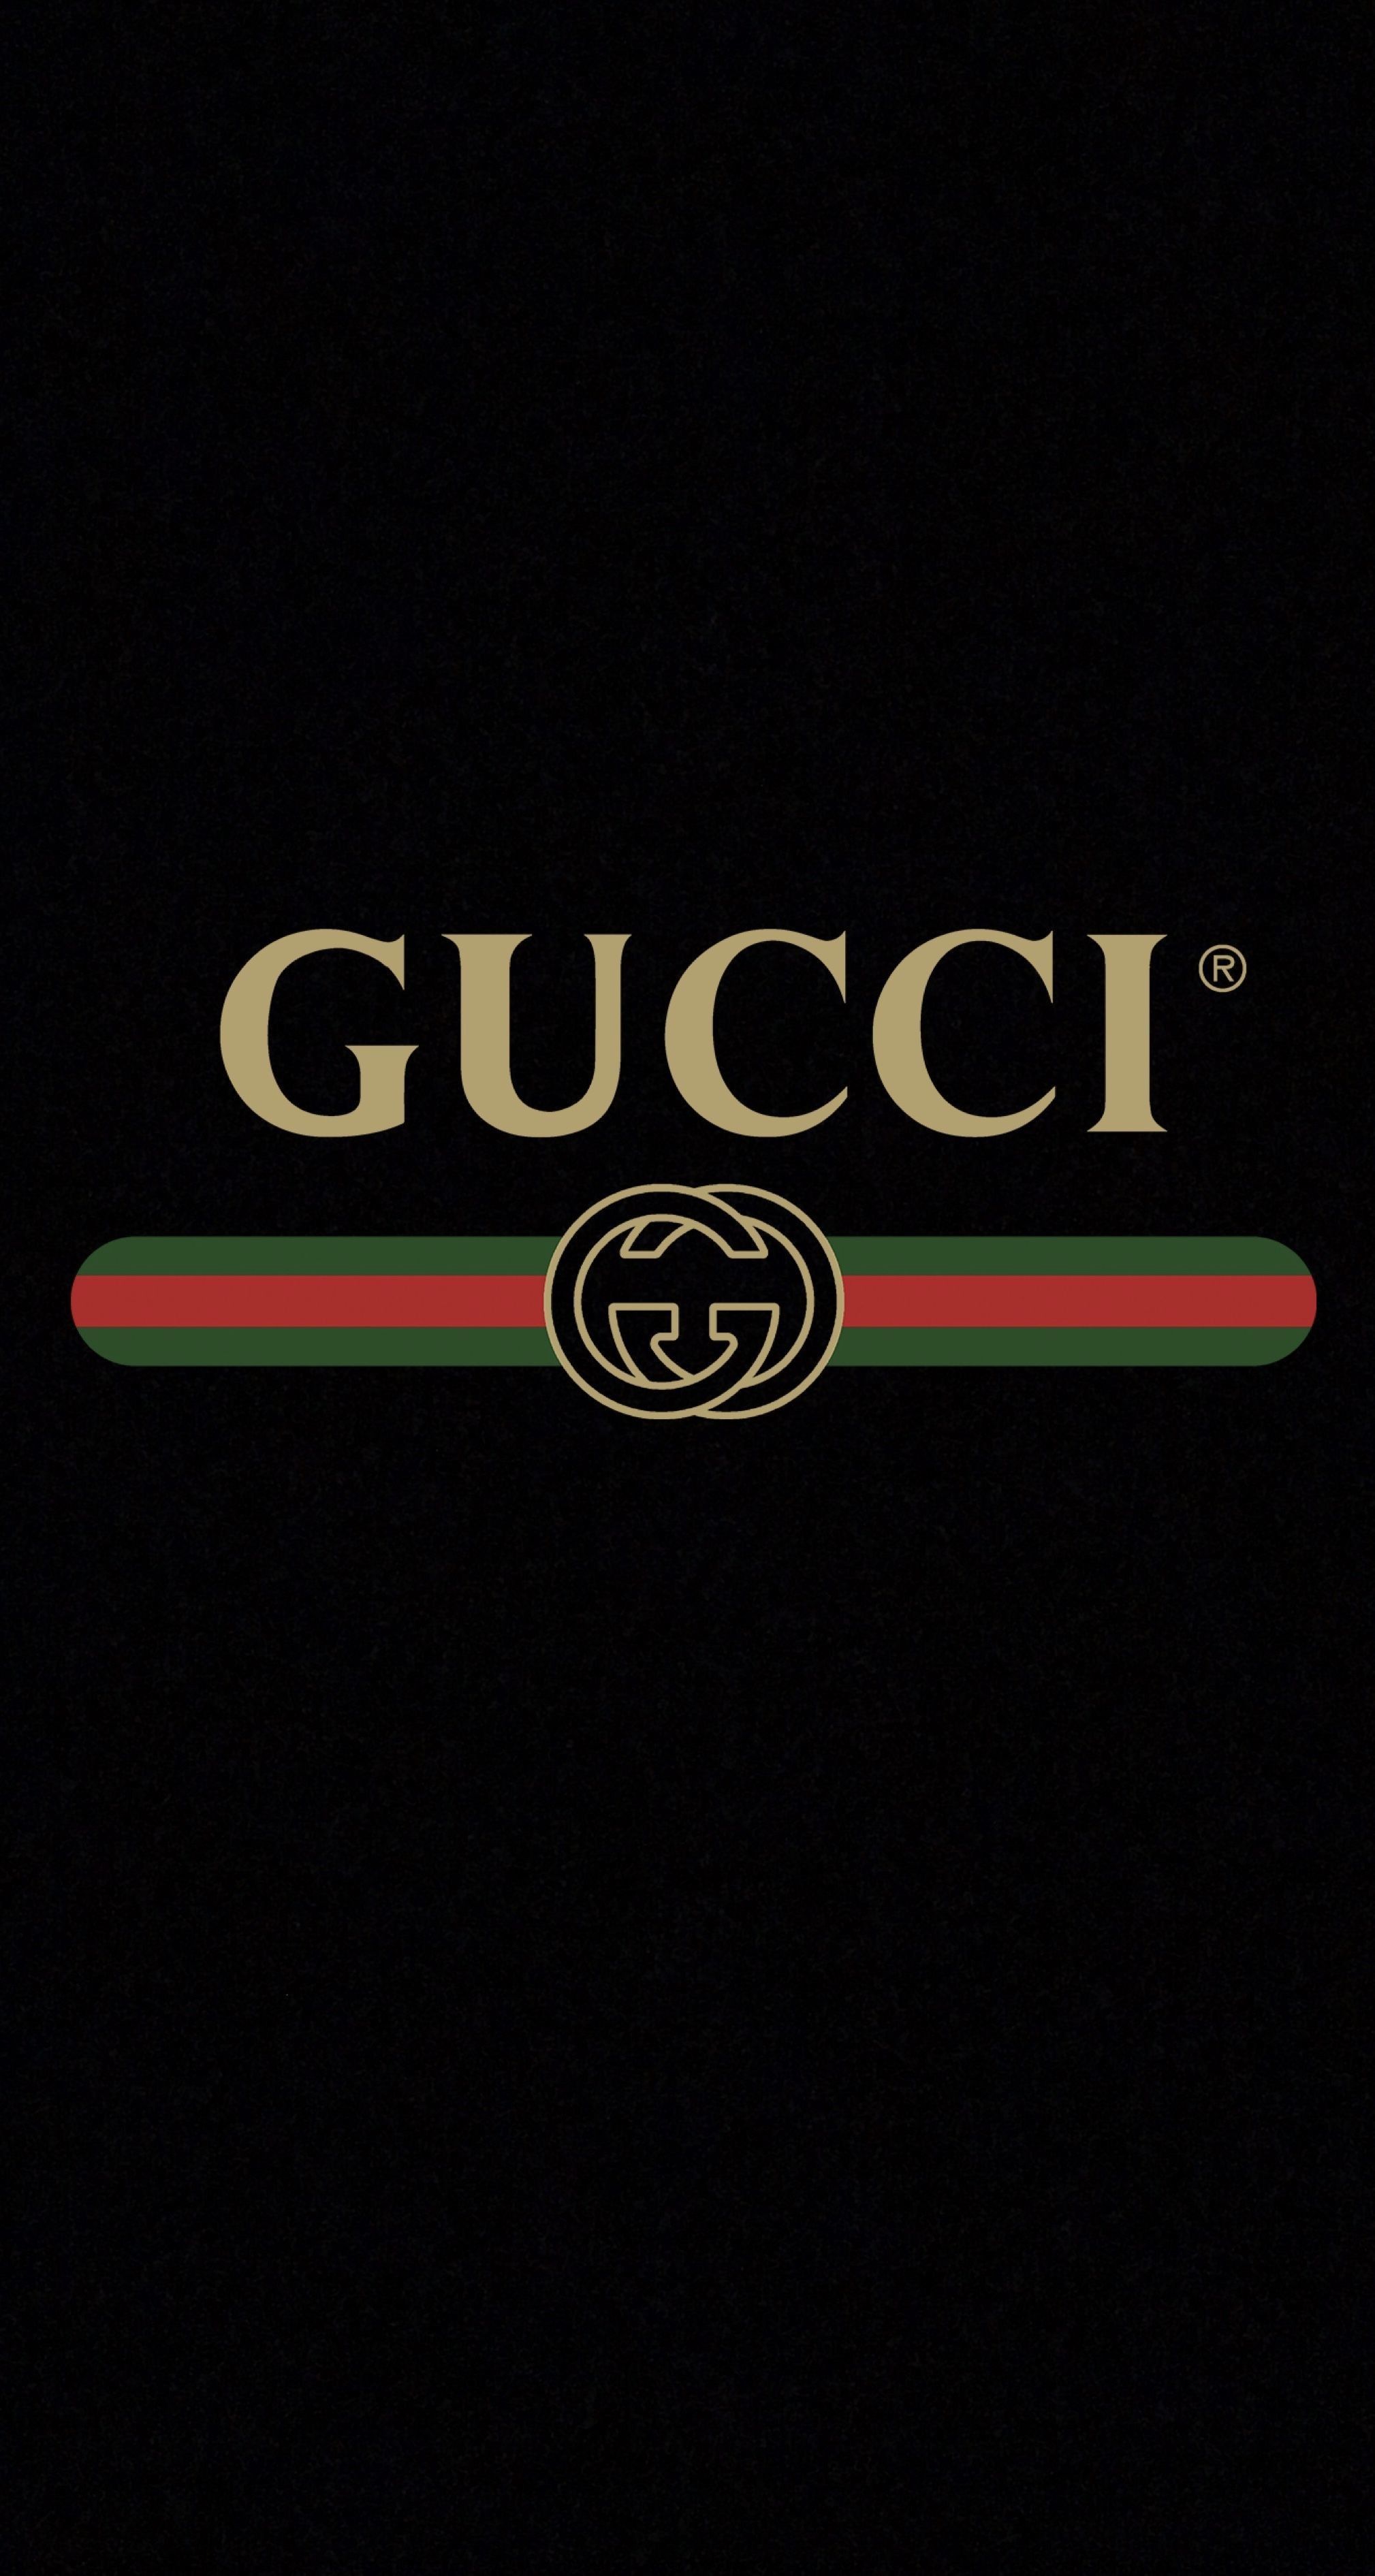 Gucci Logo ideas